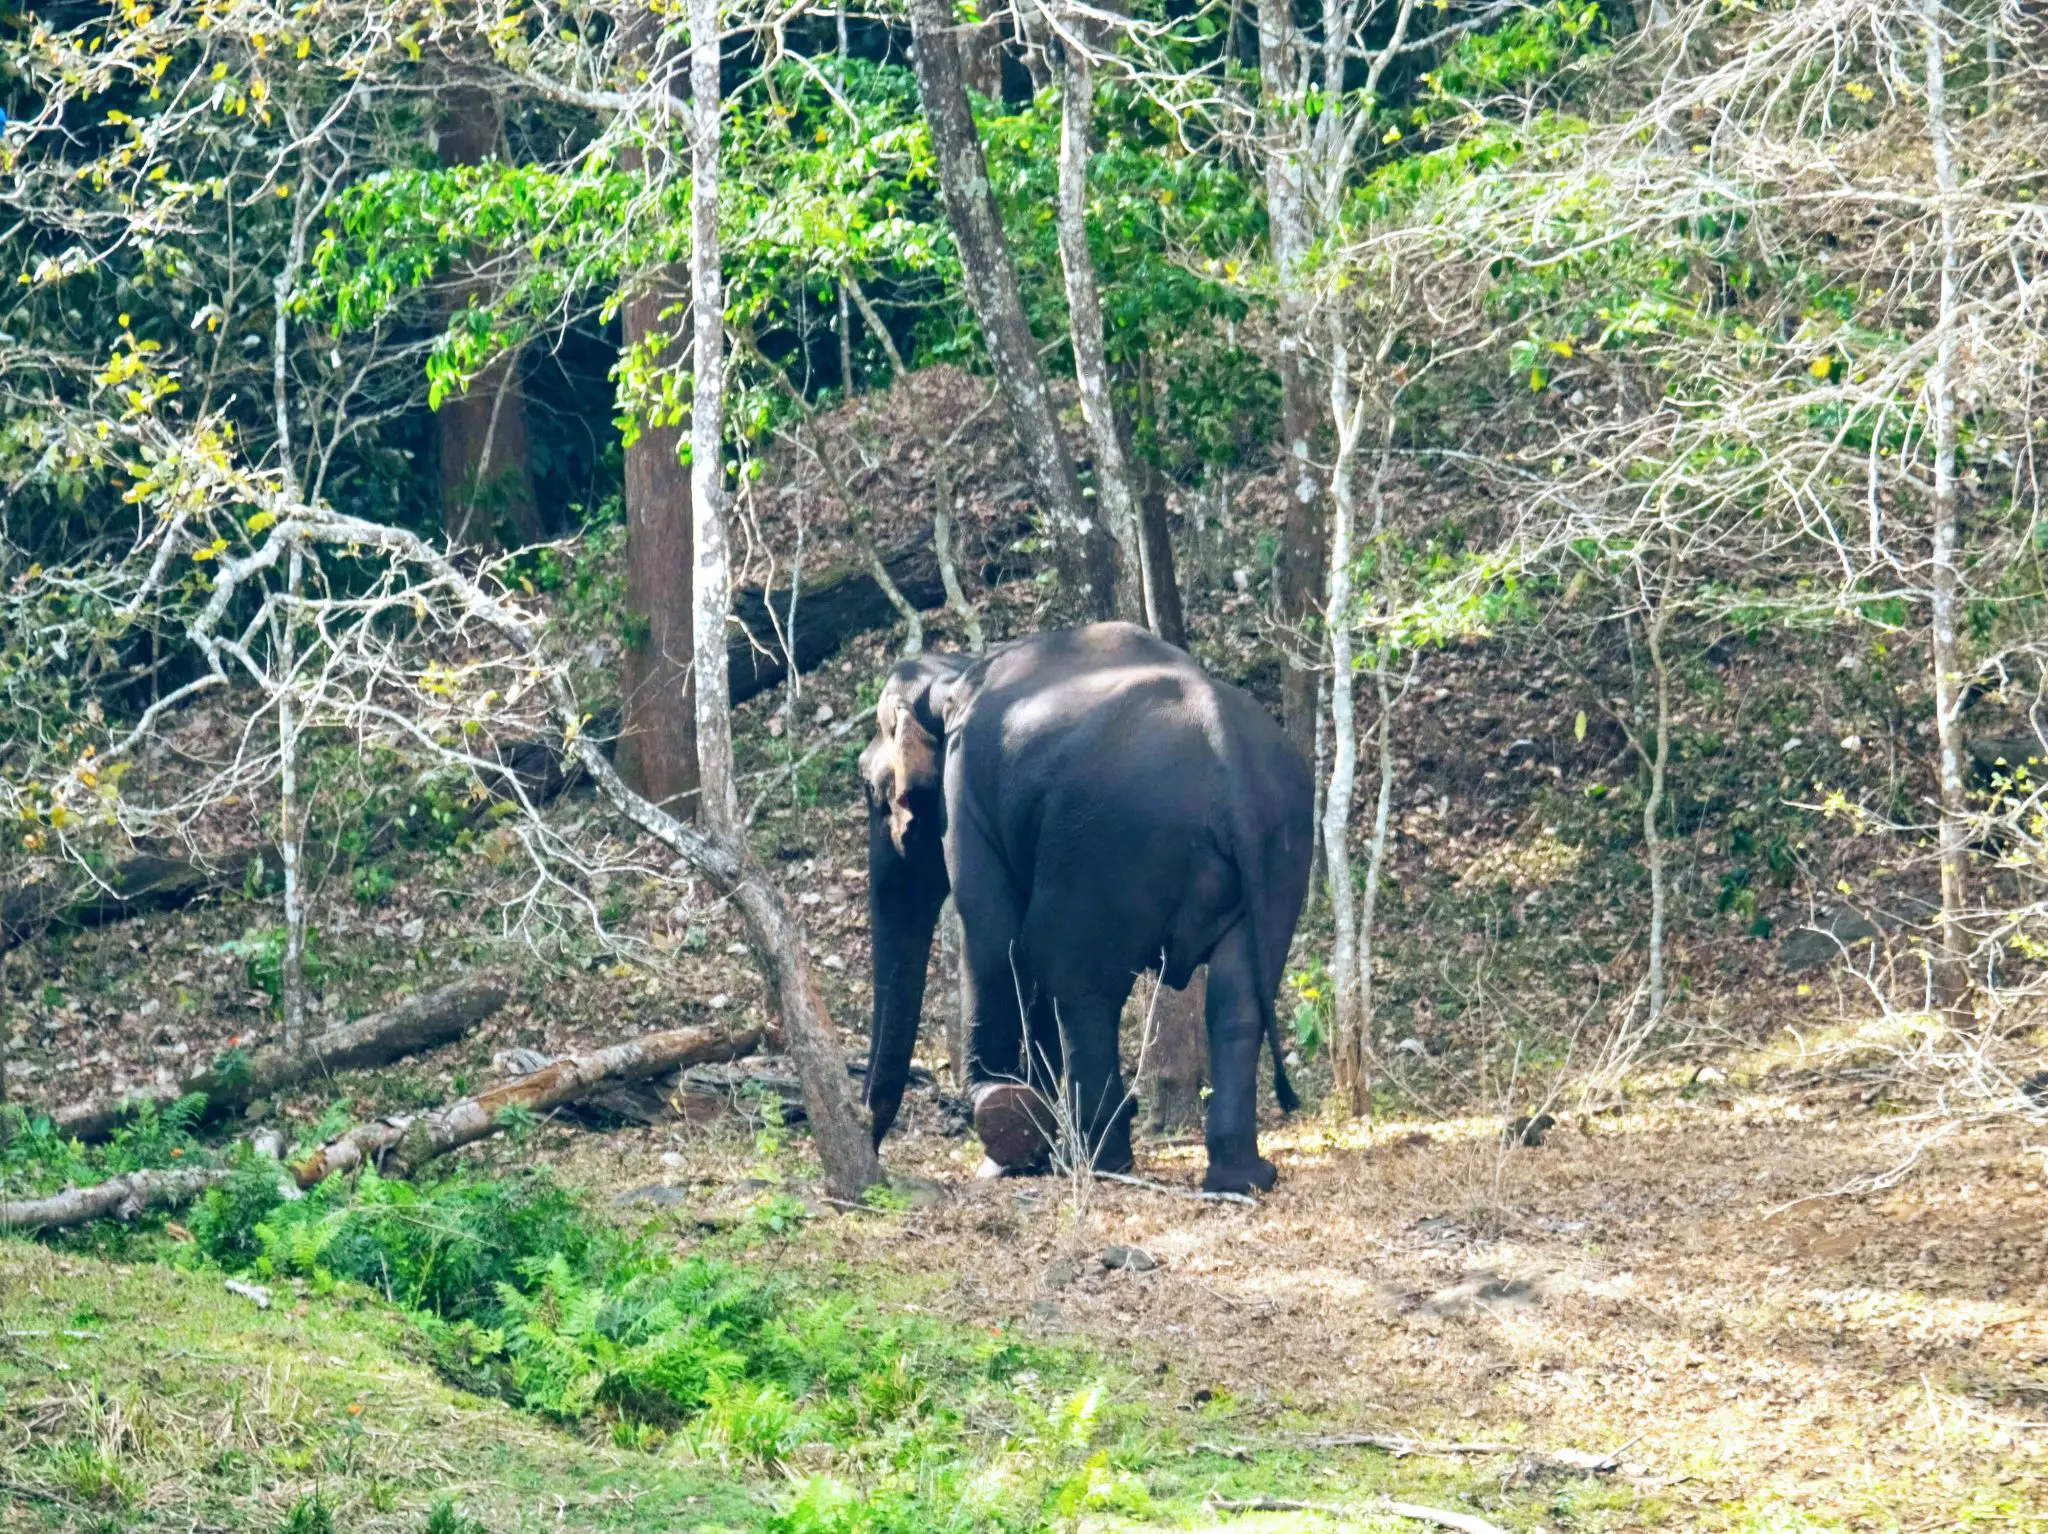 Elephant at Periyar National Park